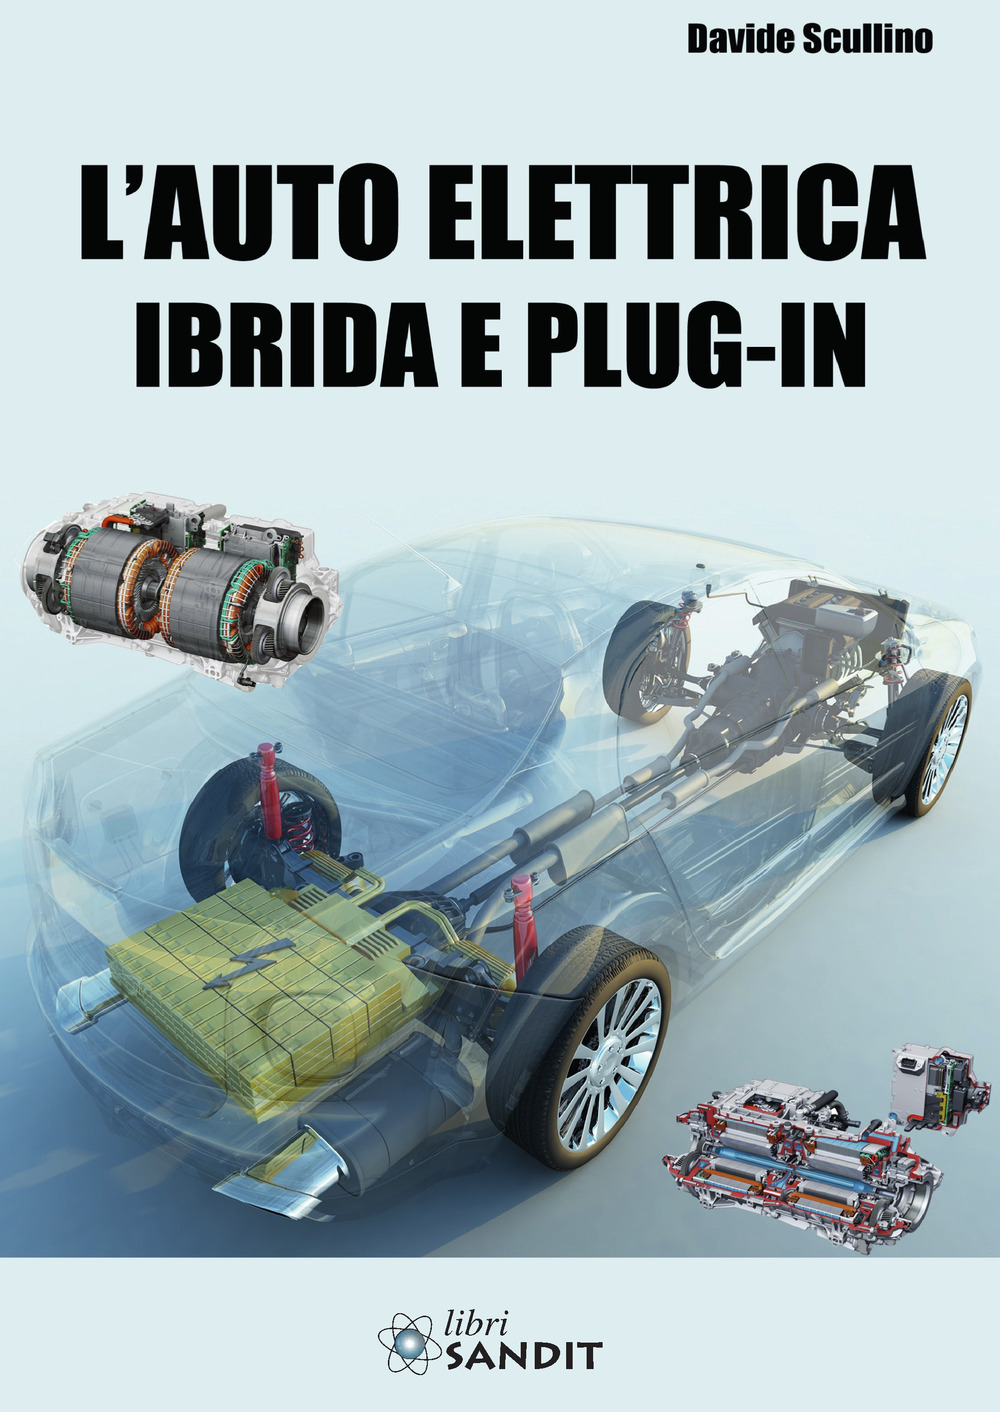 Libri Davide Scullino - L' Auto Elettrica Ibrida E Plug-In NUOVO SIGILLATO, EDIZIONE DEL 02/11/2021 SUBITO DISPONIBILE